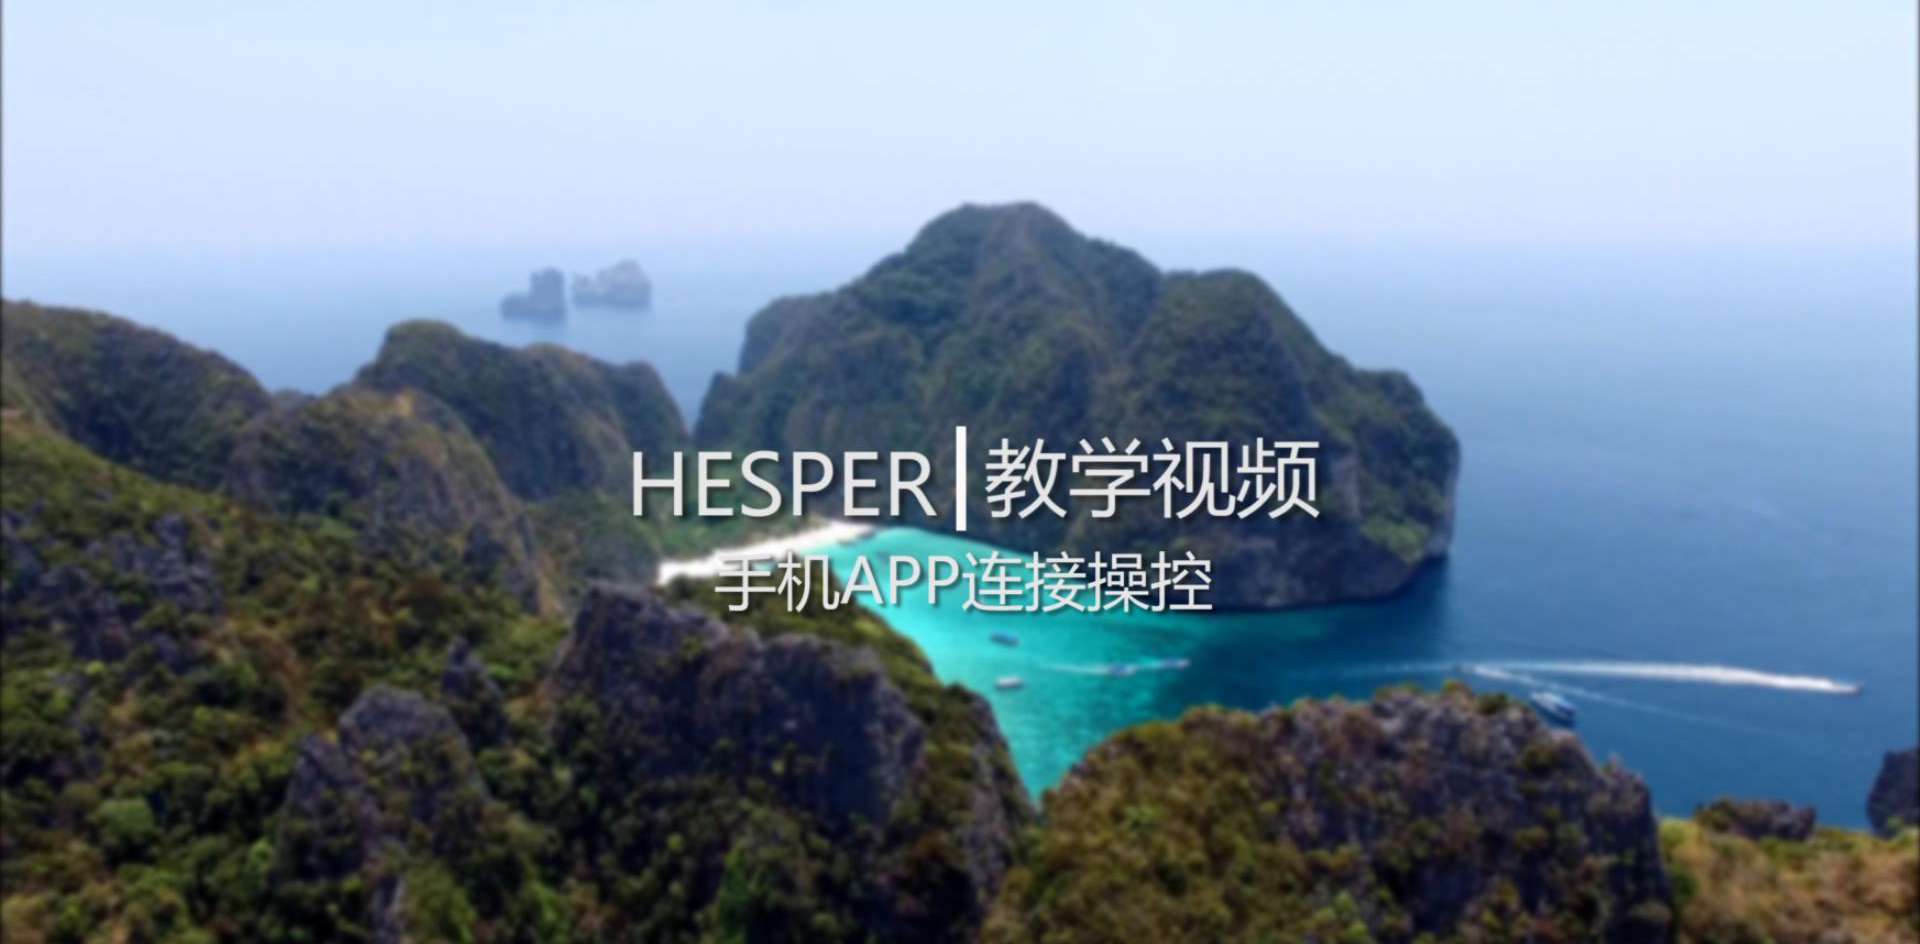 HESPER - APP版 起飞前准备